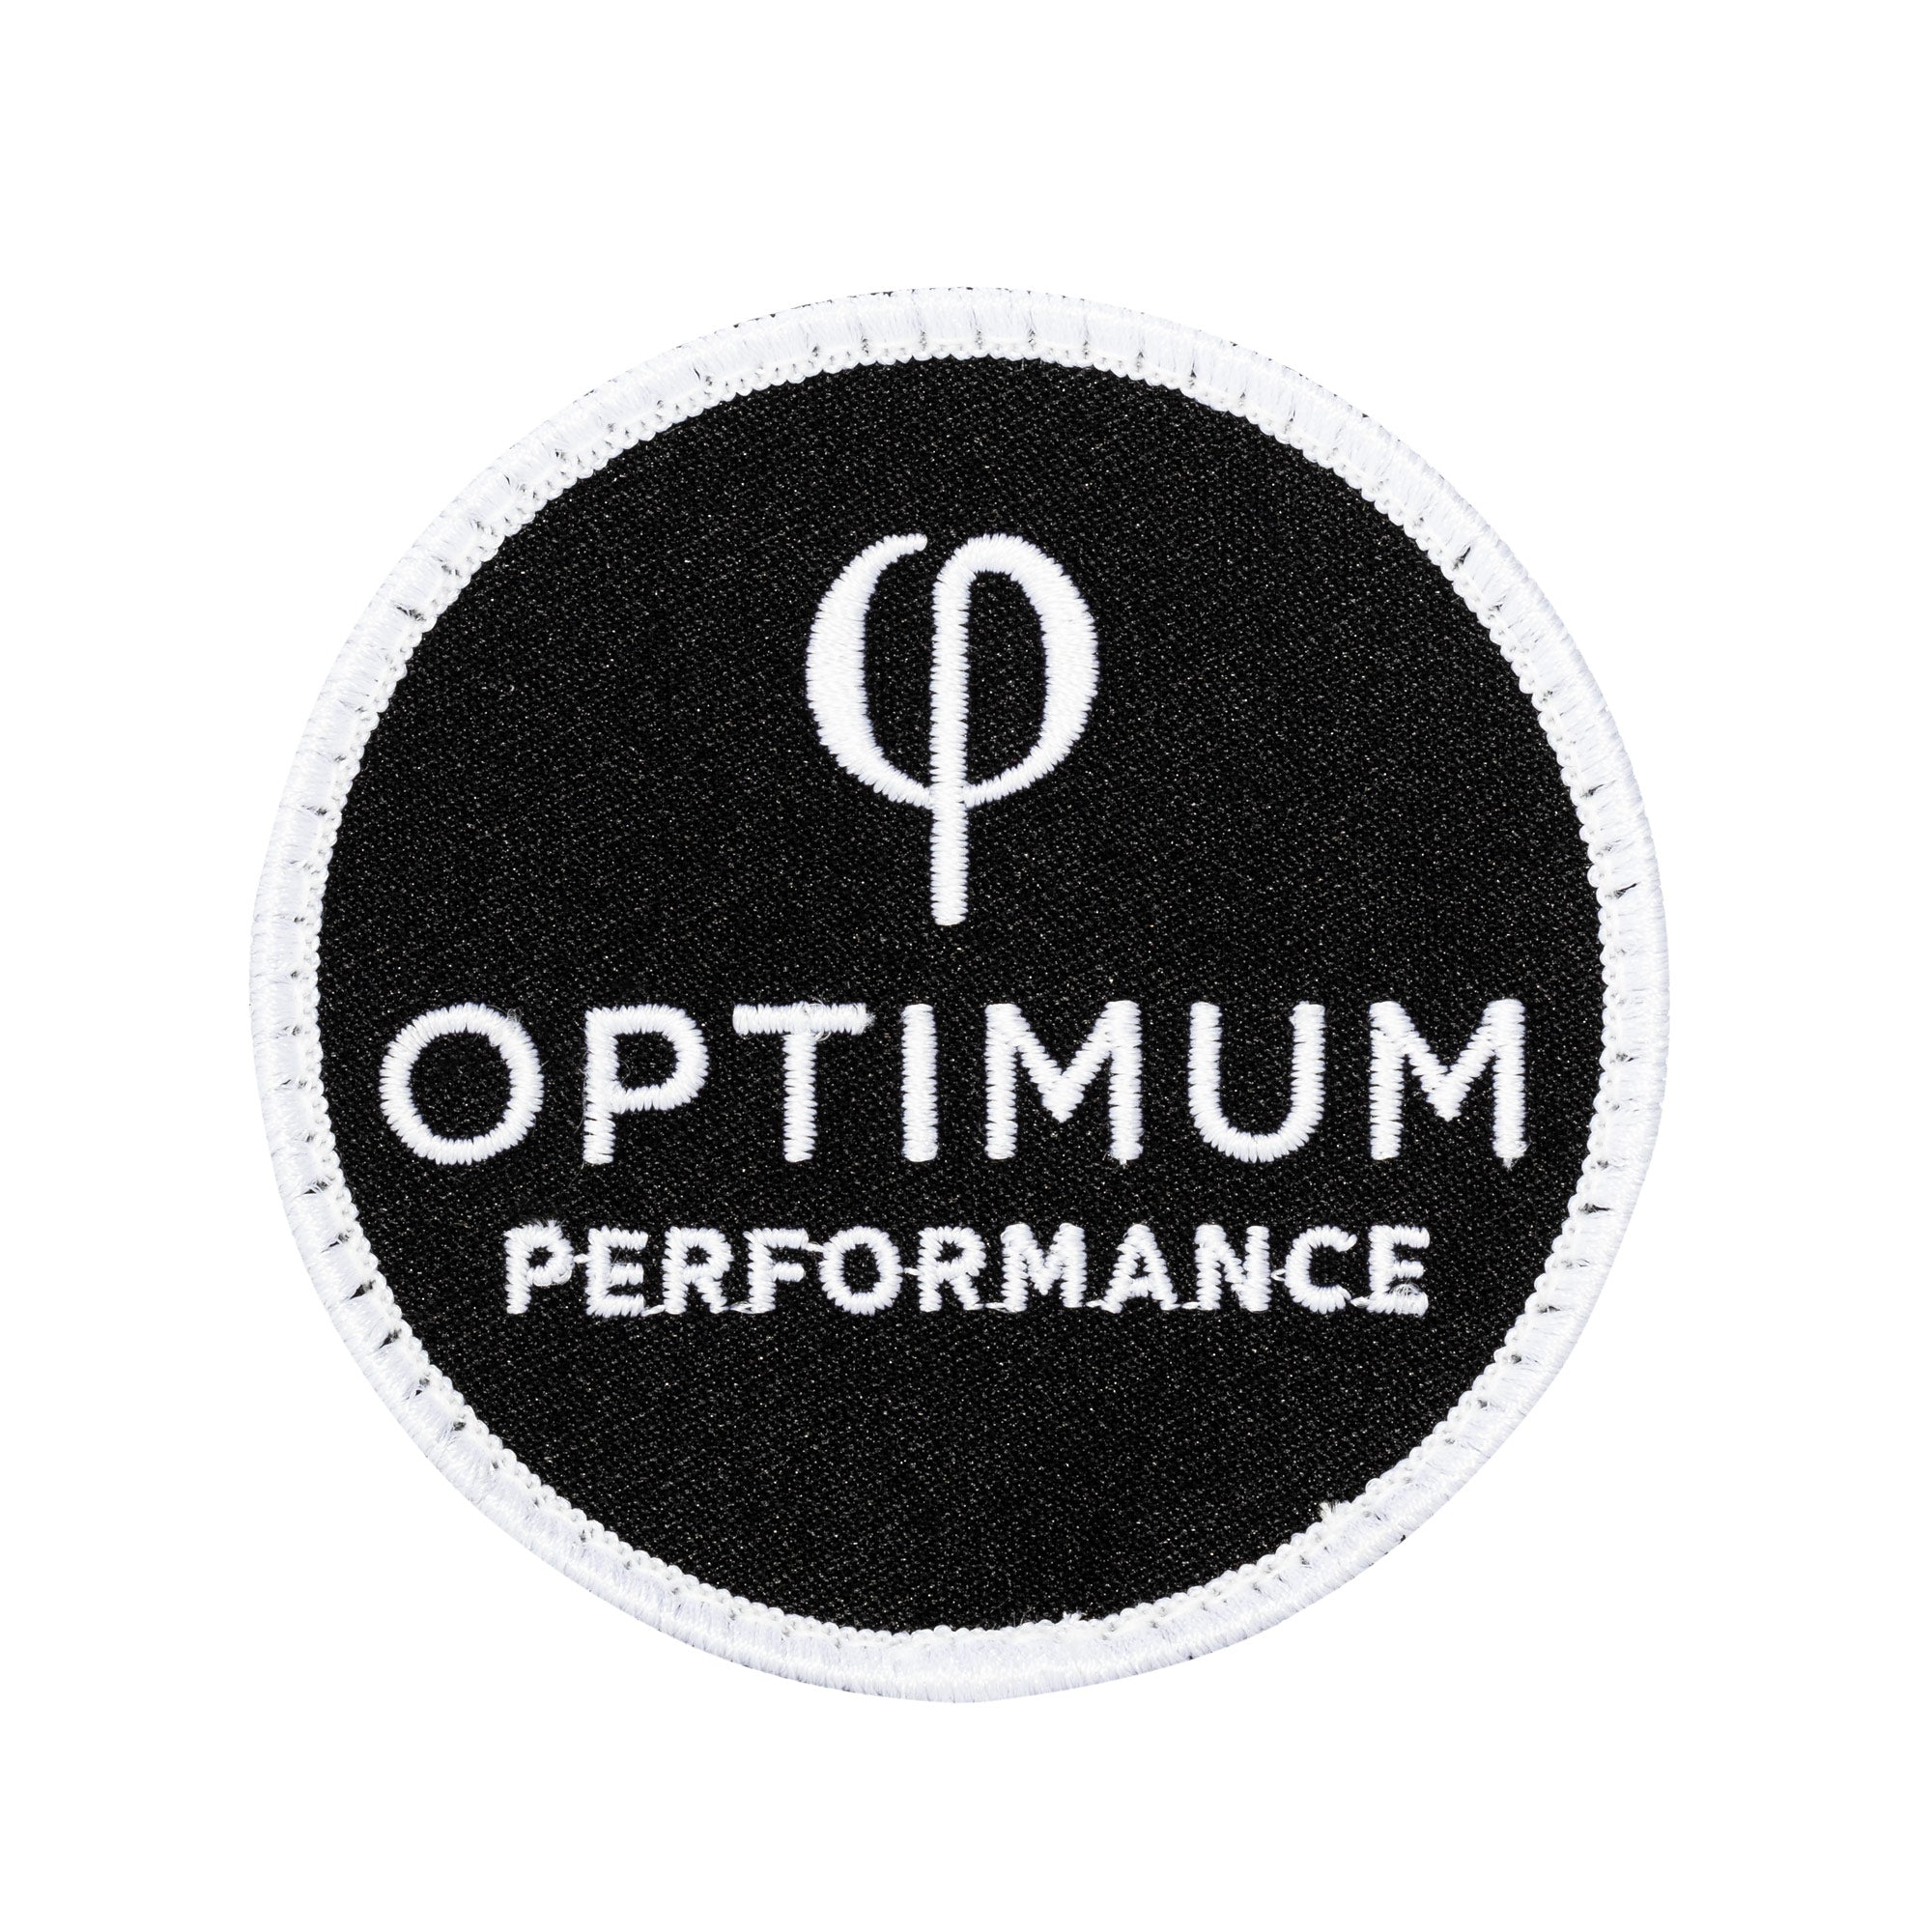 PATCHES - Optimum Performance